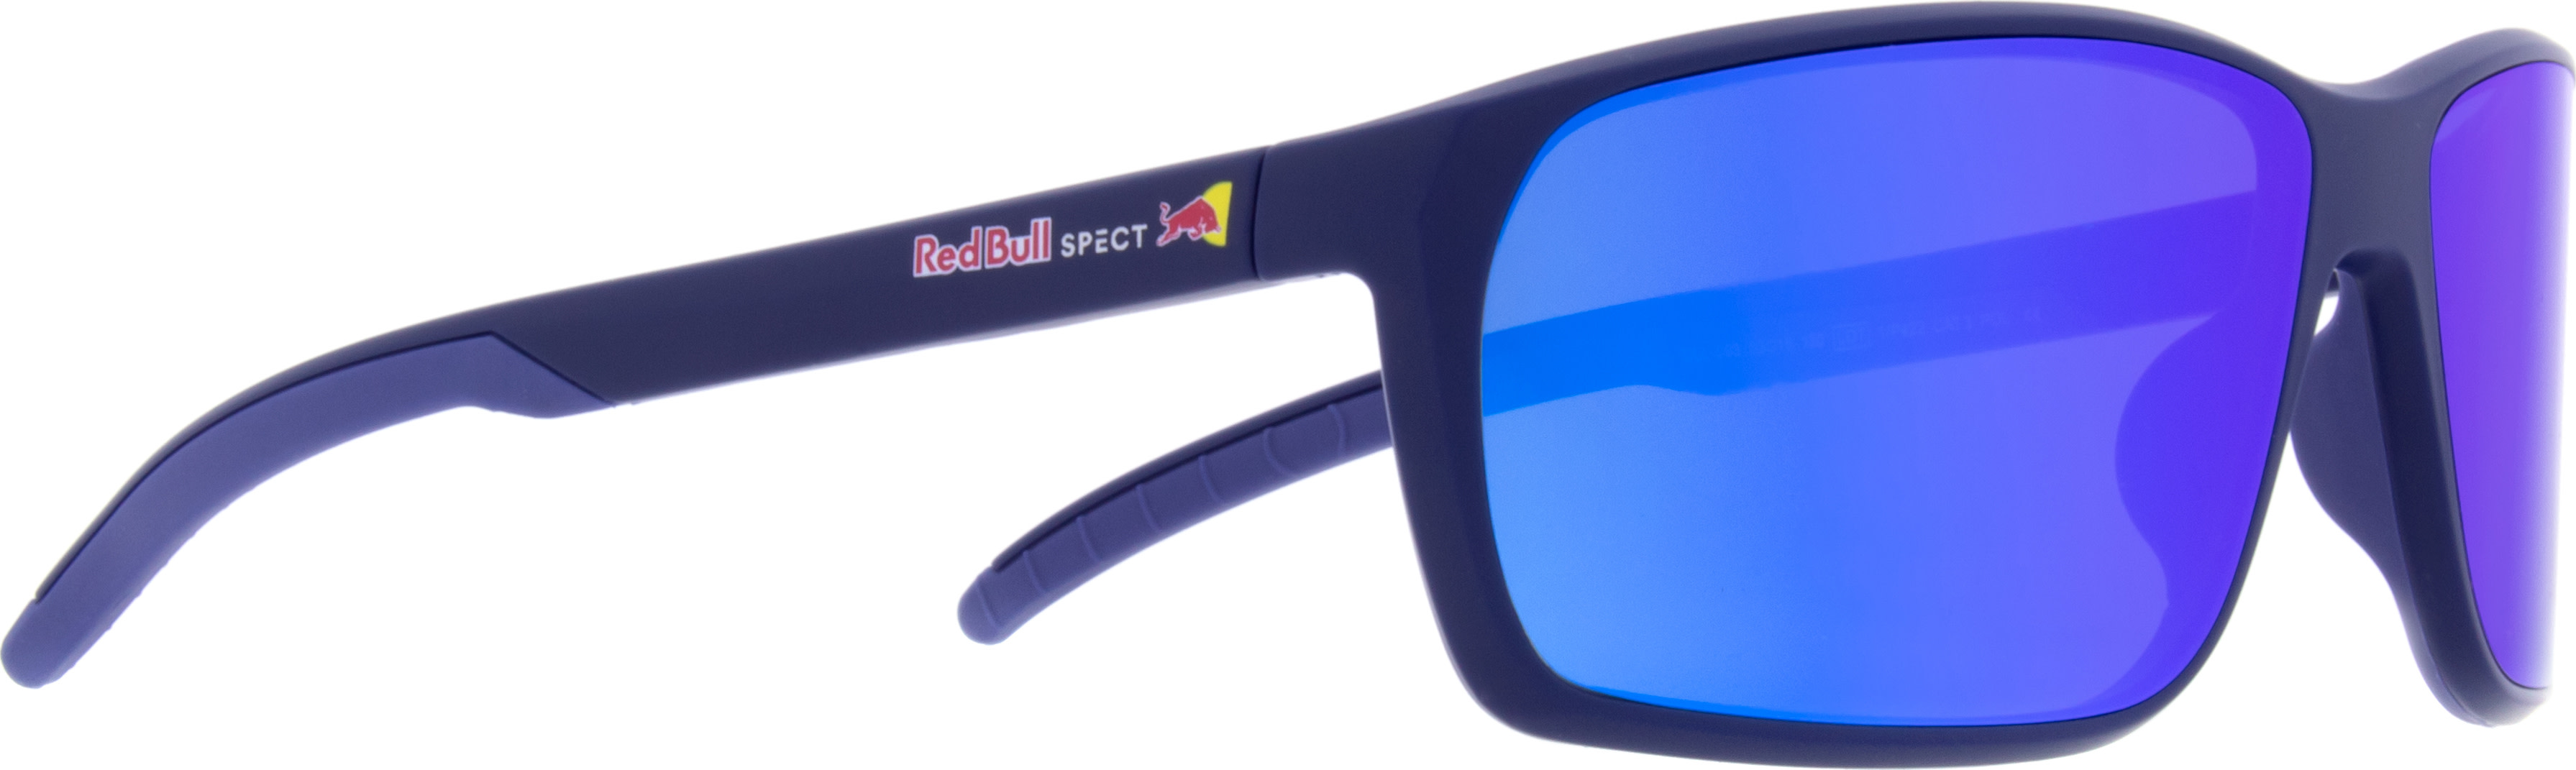 Red Bull SPECT Red Bull SPECT Till Blue/Smoke Blue Mirror OneSize, Blue/Smoke Blue Mirror